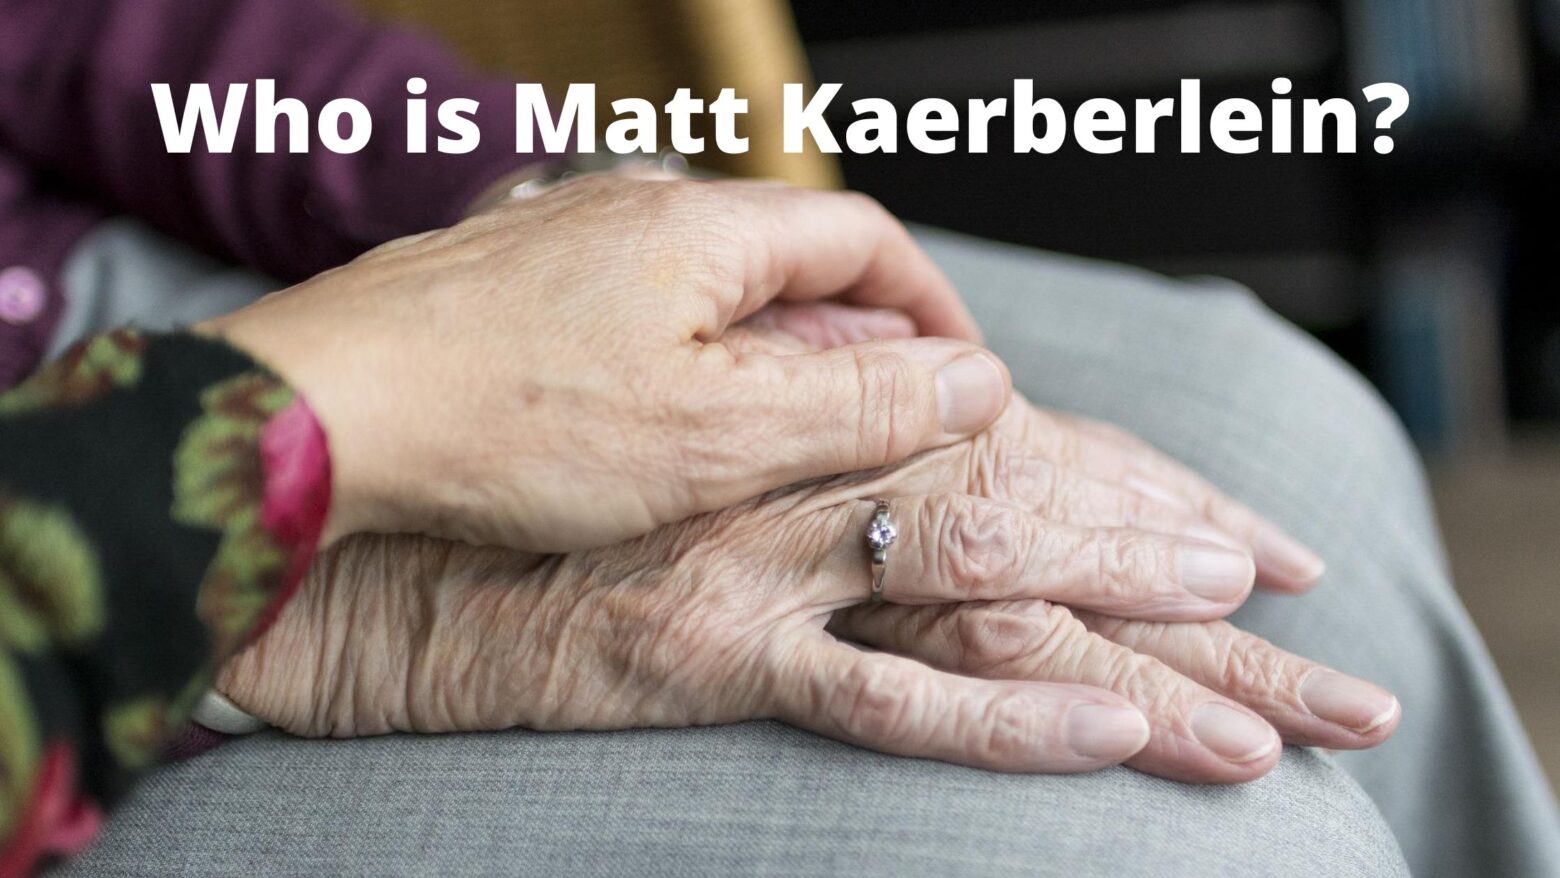 Who is Matt Kaerberlein?